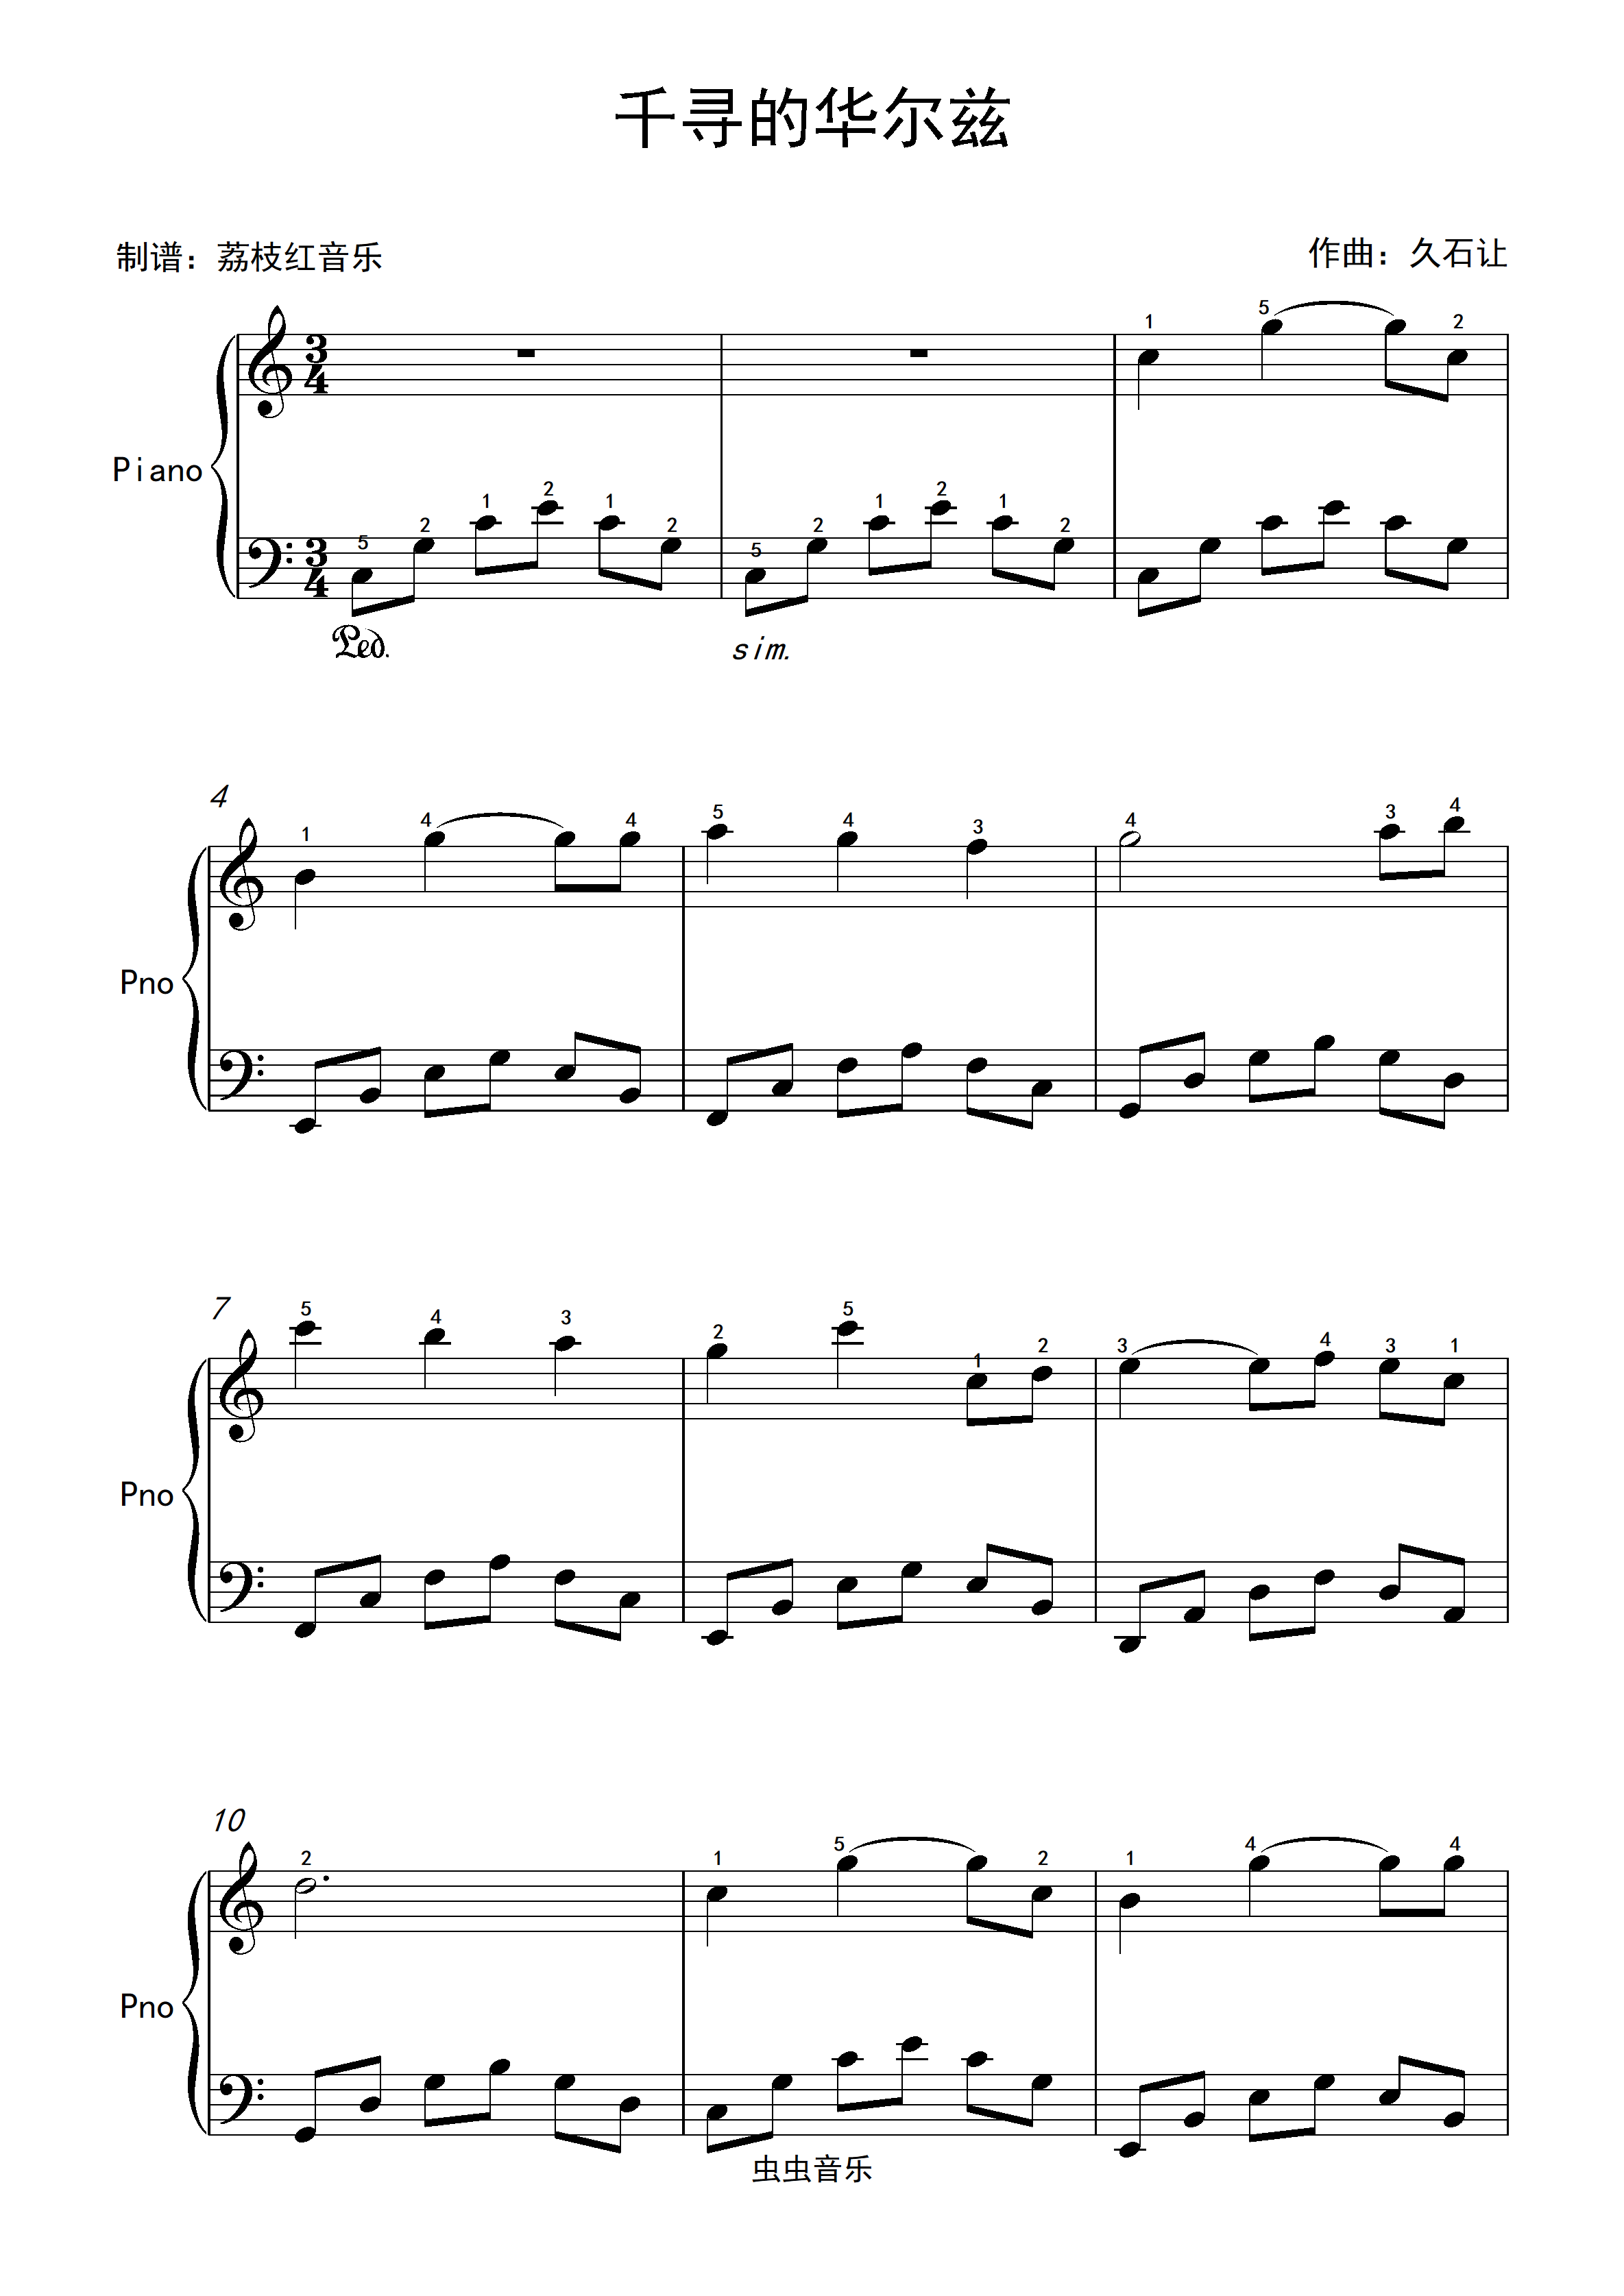 久石让简单易学钢琴谱千寻的华尔兹带指法c大调钢琴谱独奏谱